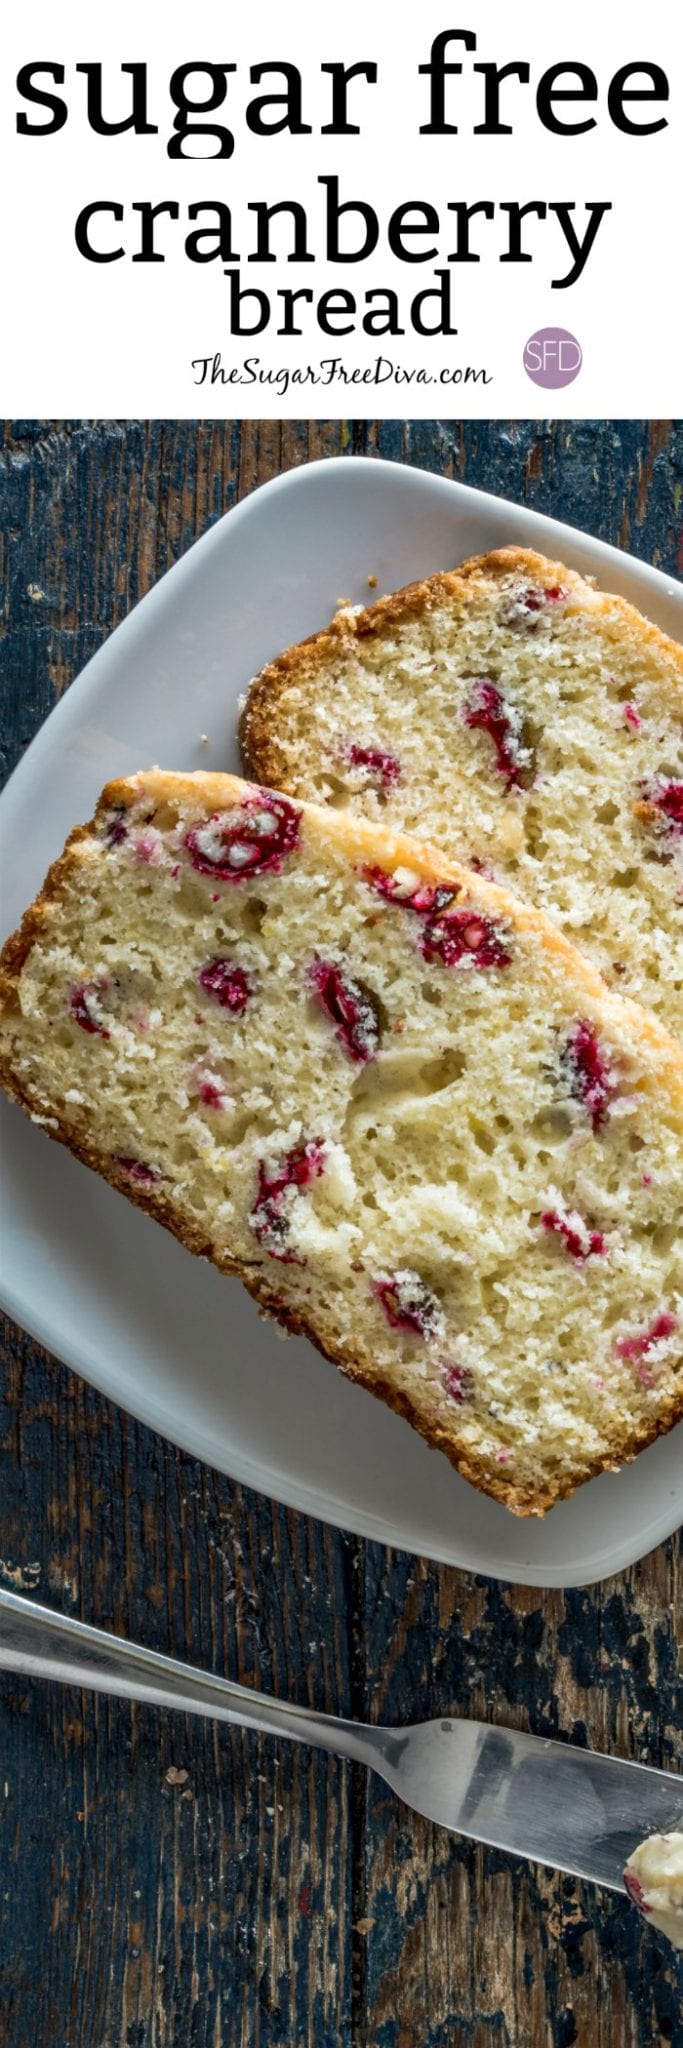 Sugar Free Cranberry Bread Recipe